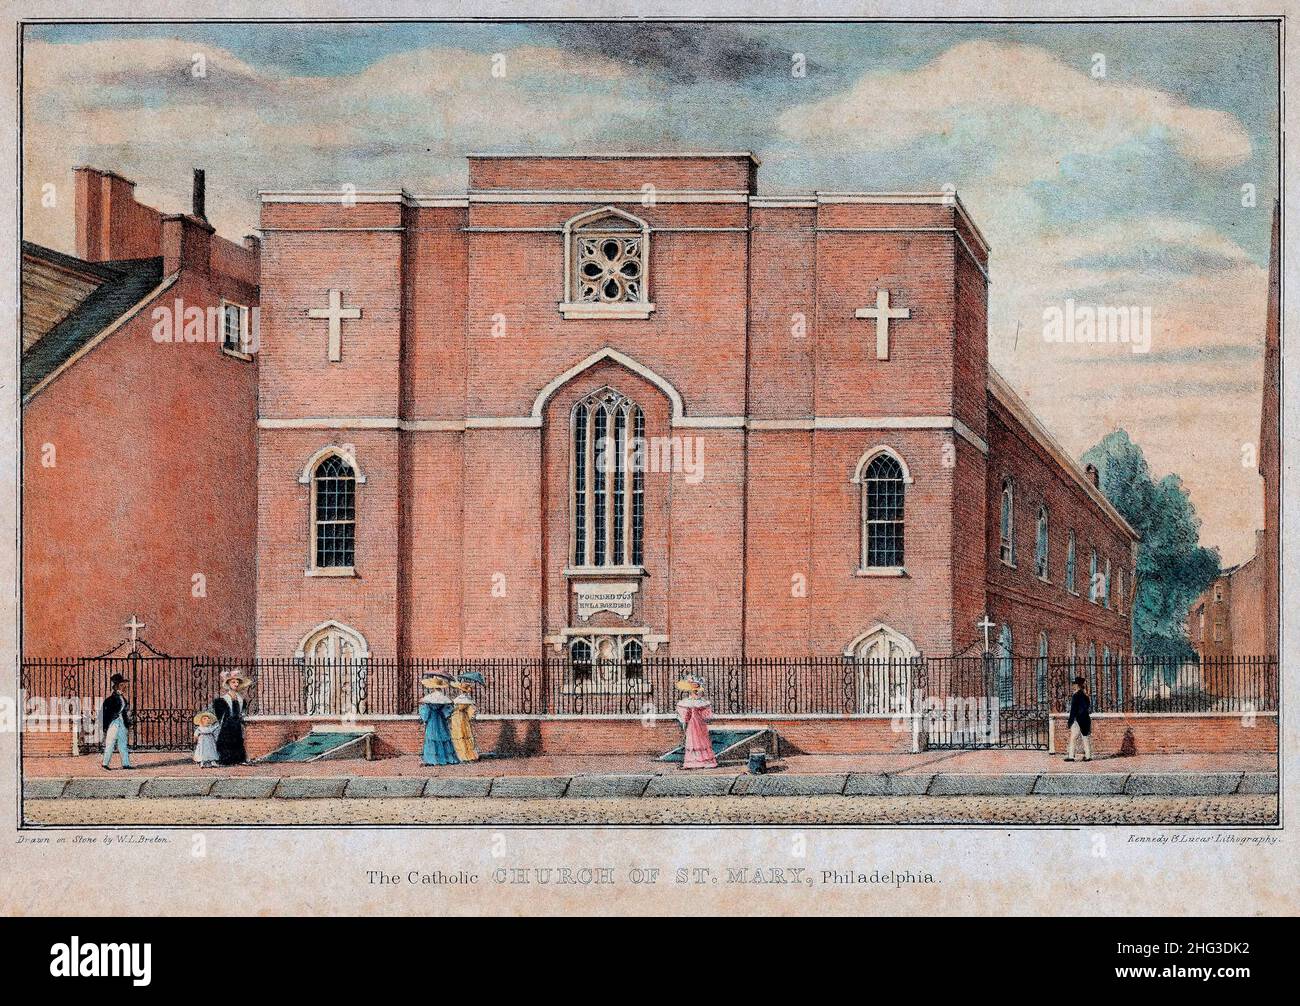 Die katholische Kirche St. Mary, Philadelphia. 1830, von William L Breton, um 1773-1855 Künstler. Dieses Bild zeigt die römisch-katholische Kirche von Saint Stockfoto